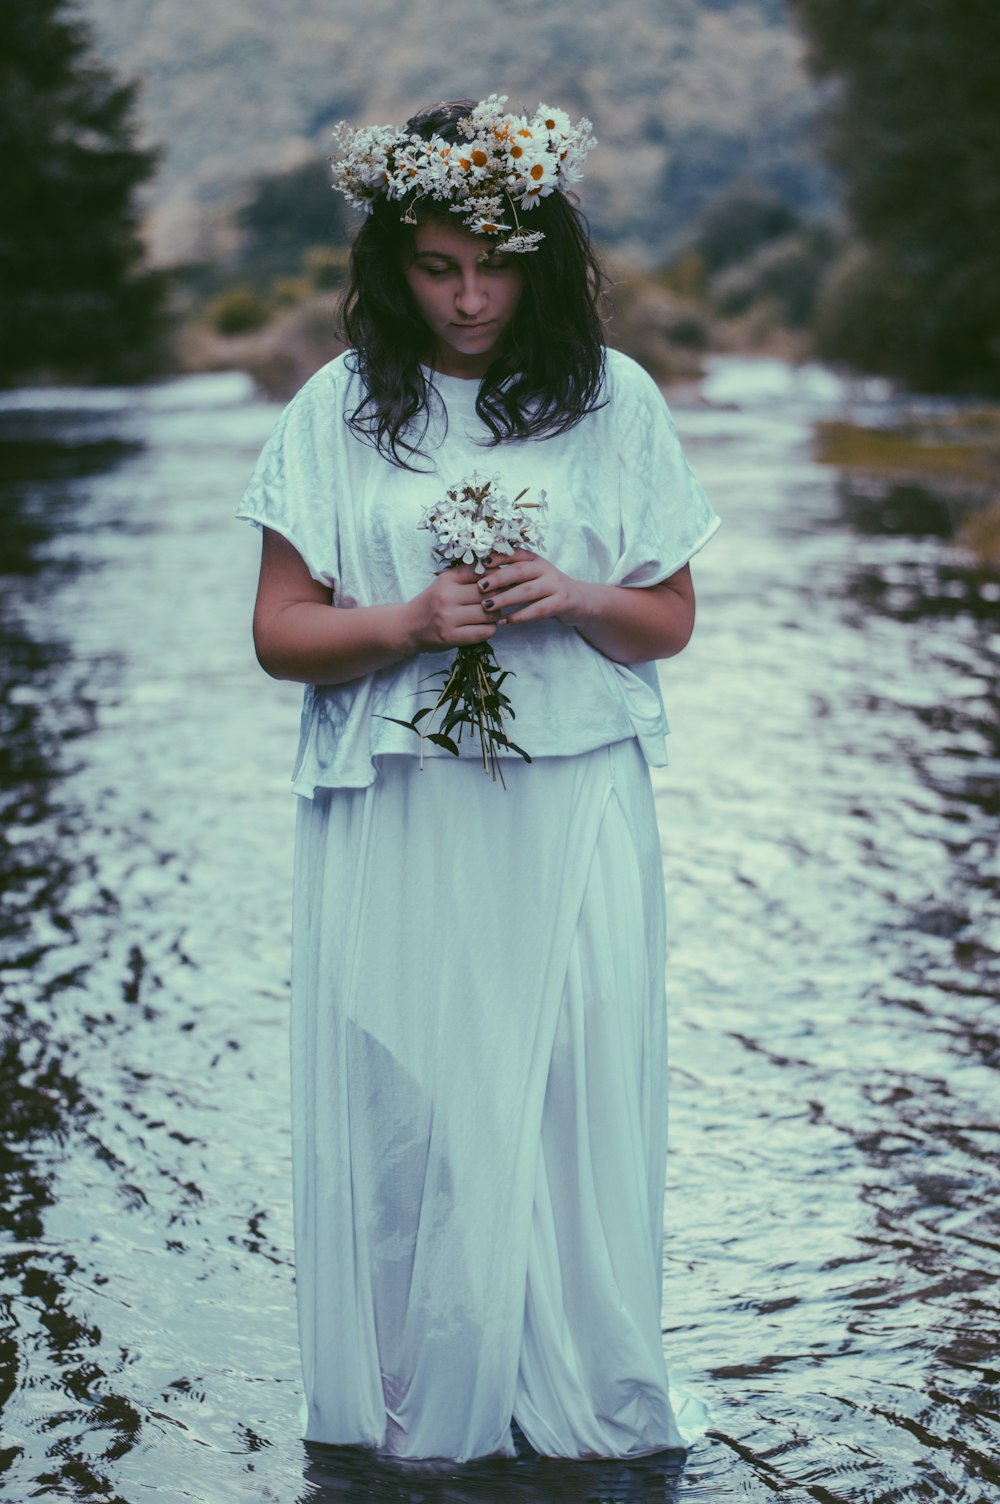 donna che indossa il vestito e tiene il fiore in piedi nello specchio d'acqua